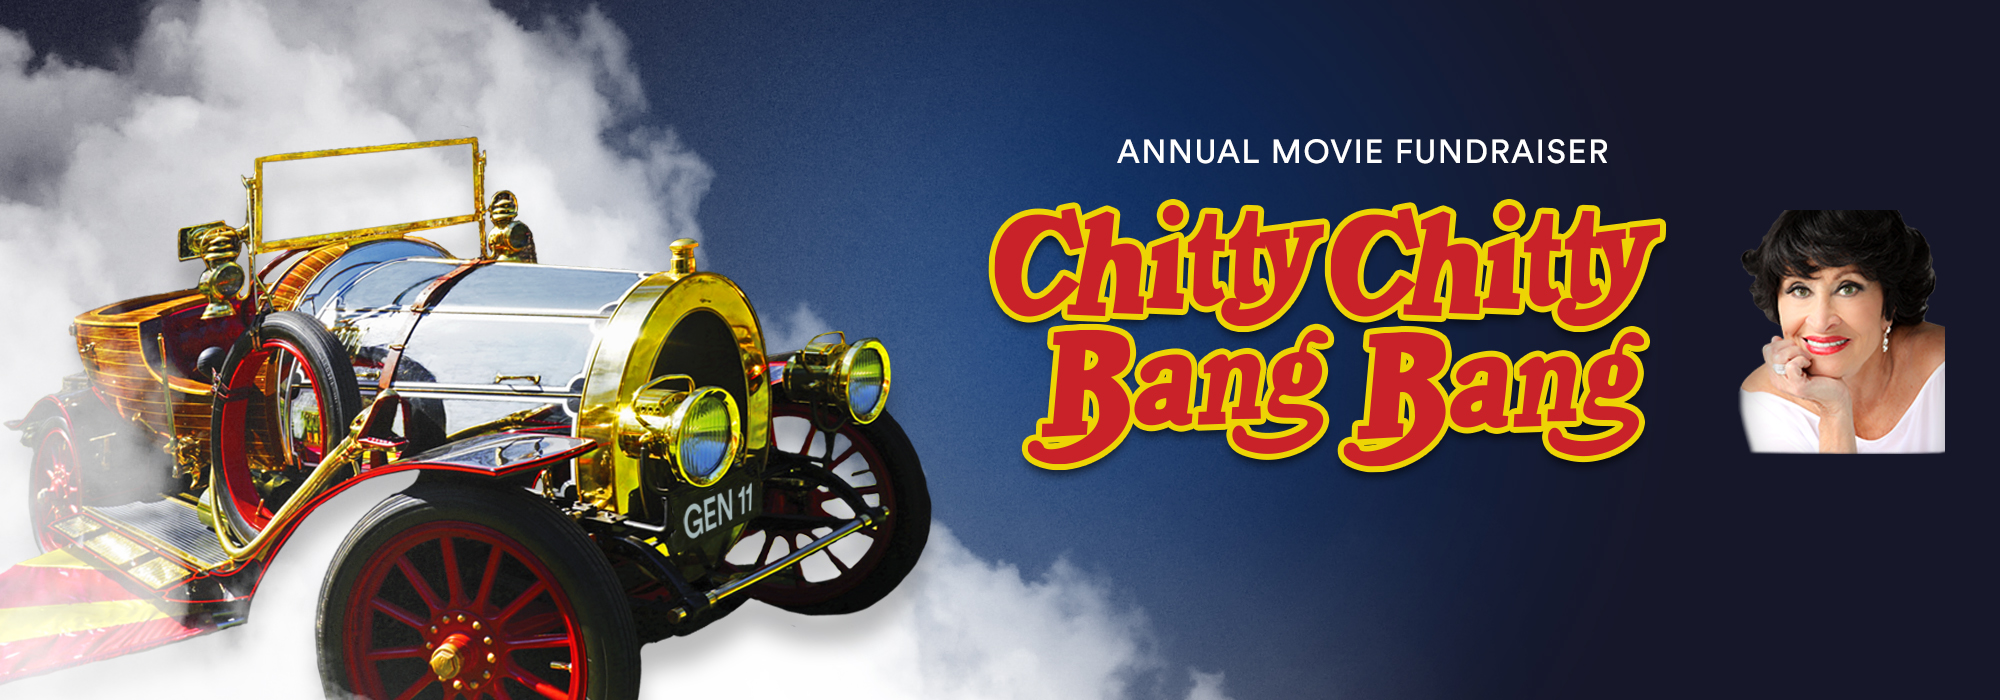 “Chitty Chitty Bang Bang” Screening With Chita Rivera At The United Palace